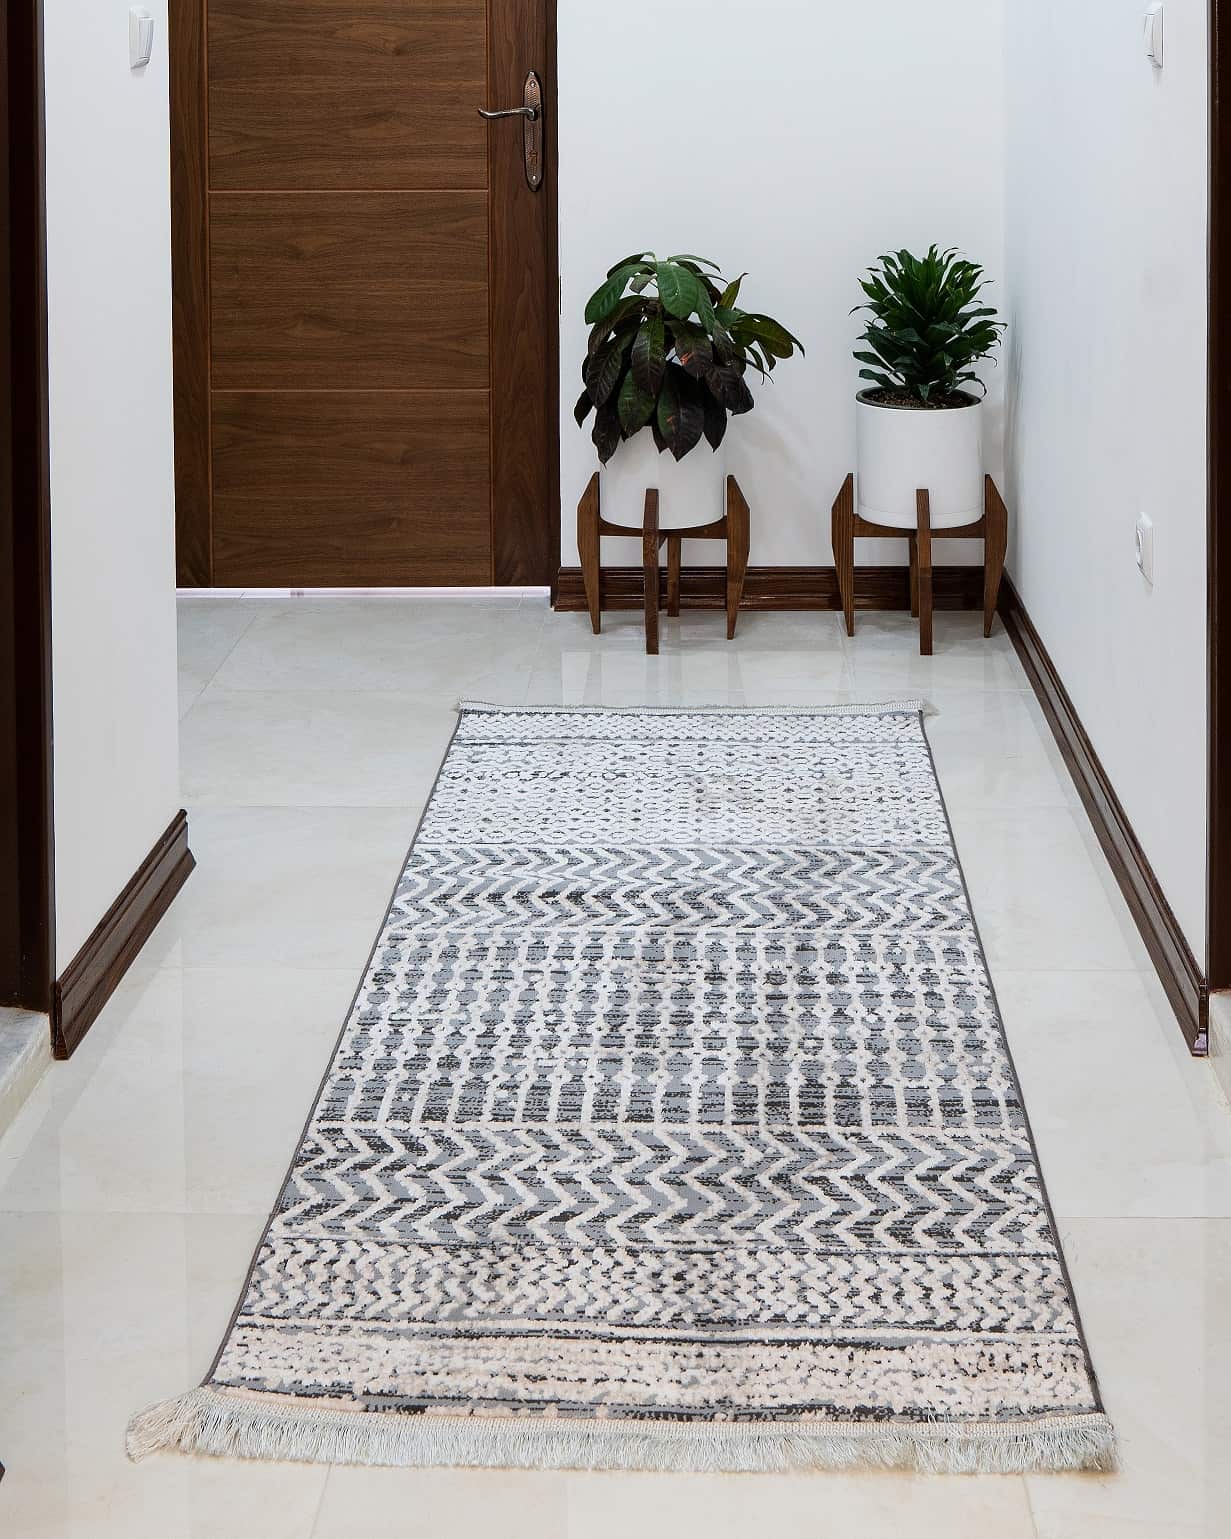 فرش راهرویی مراکشی کد (1)41270 زمینه نقره ای